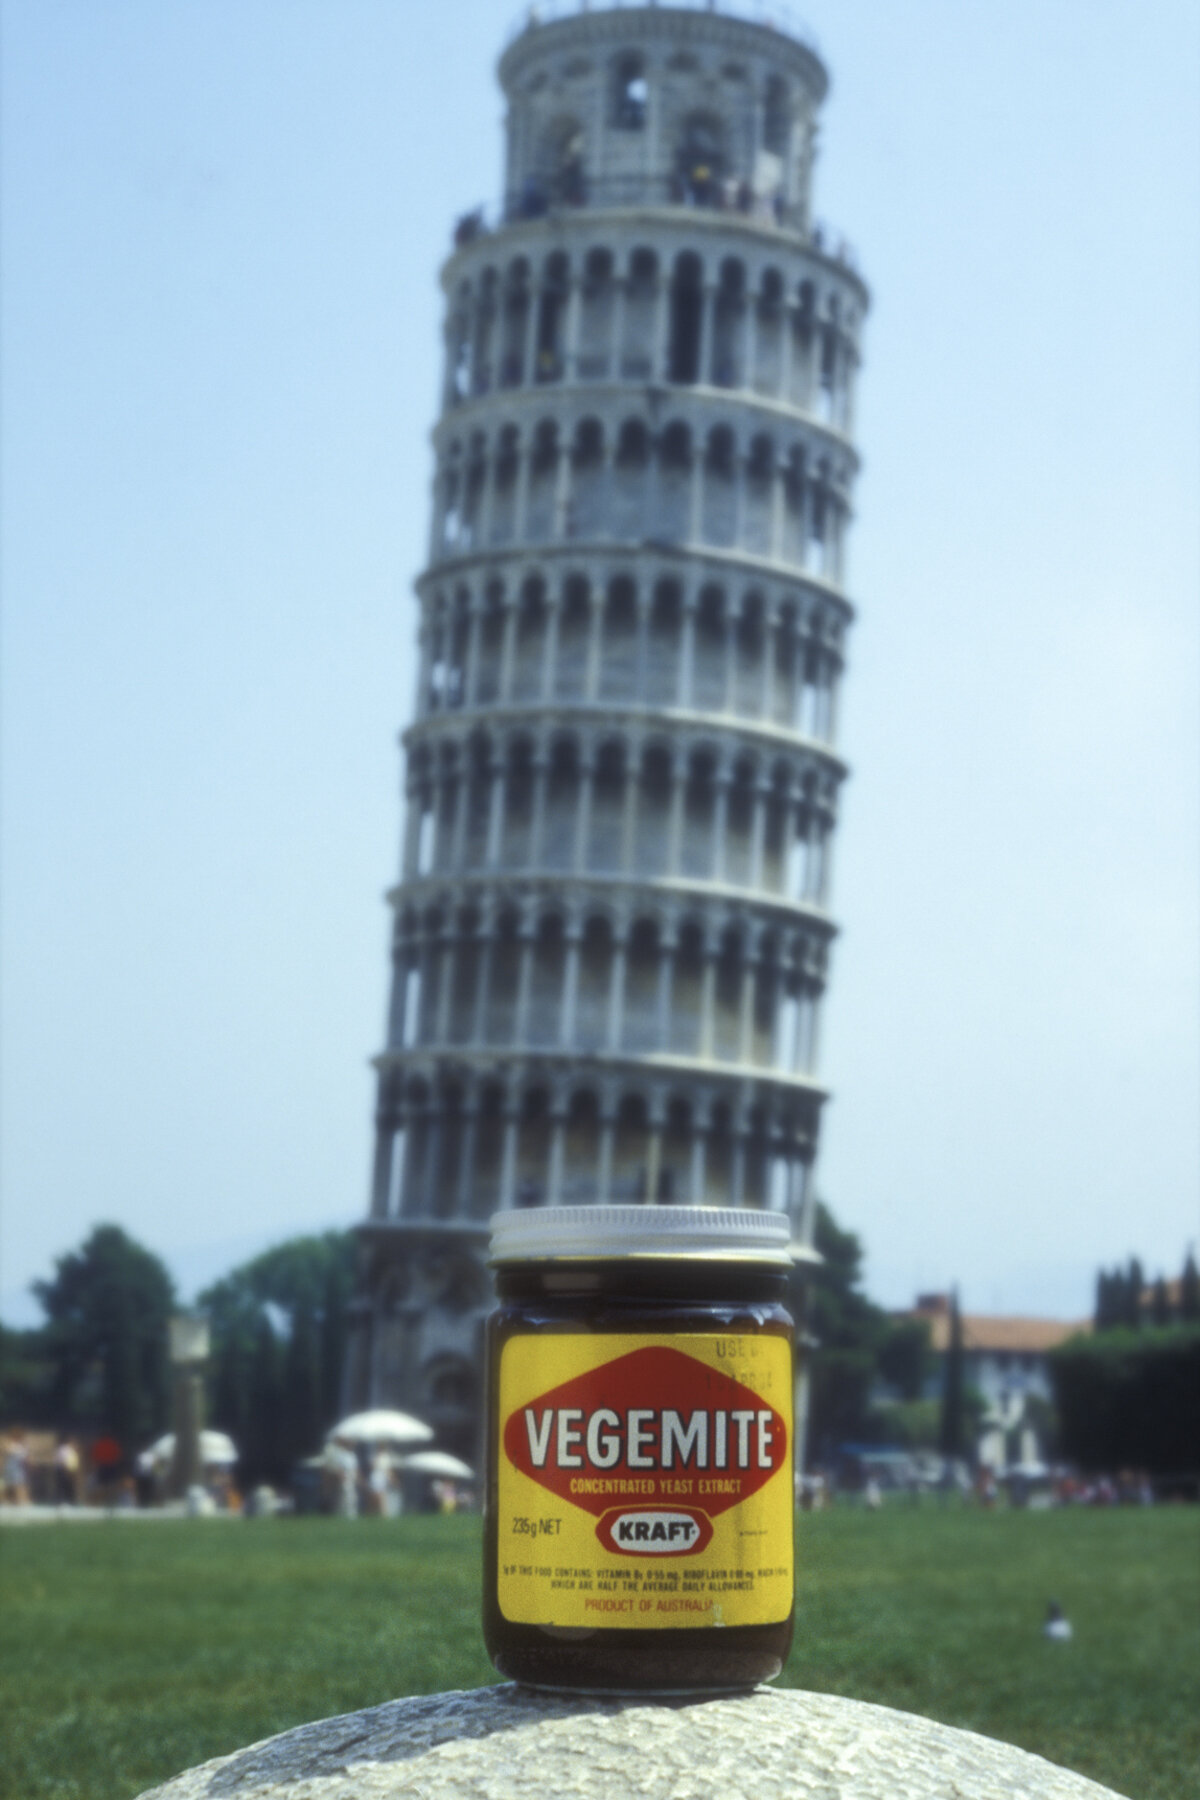 Fotografics from Italy, 1983